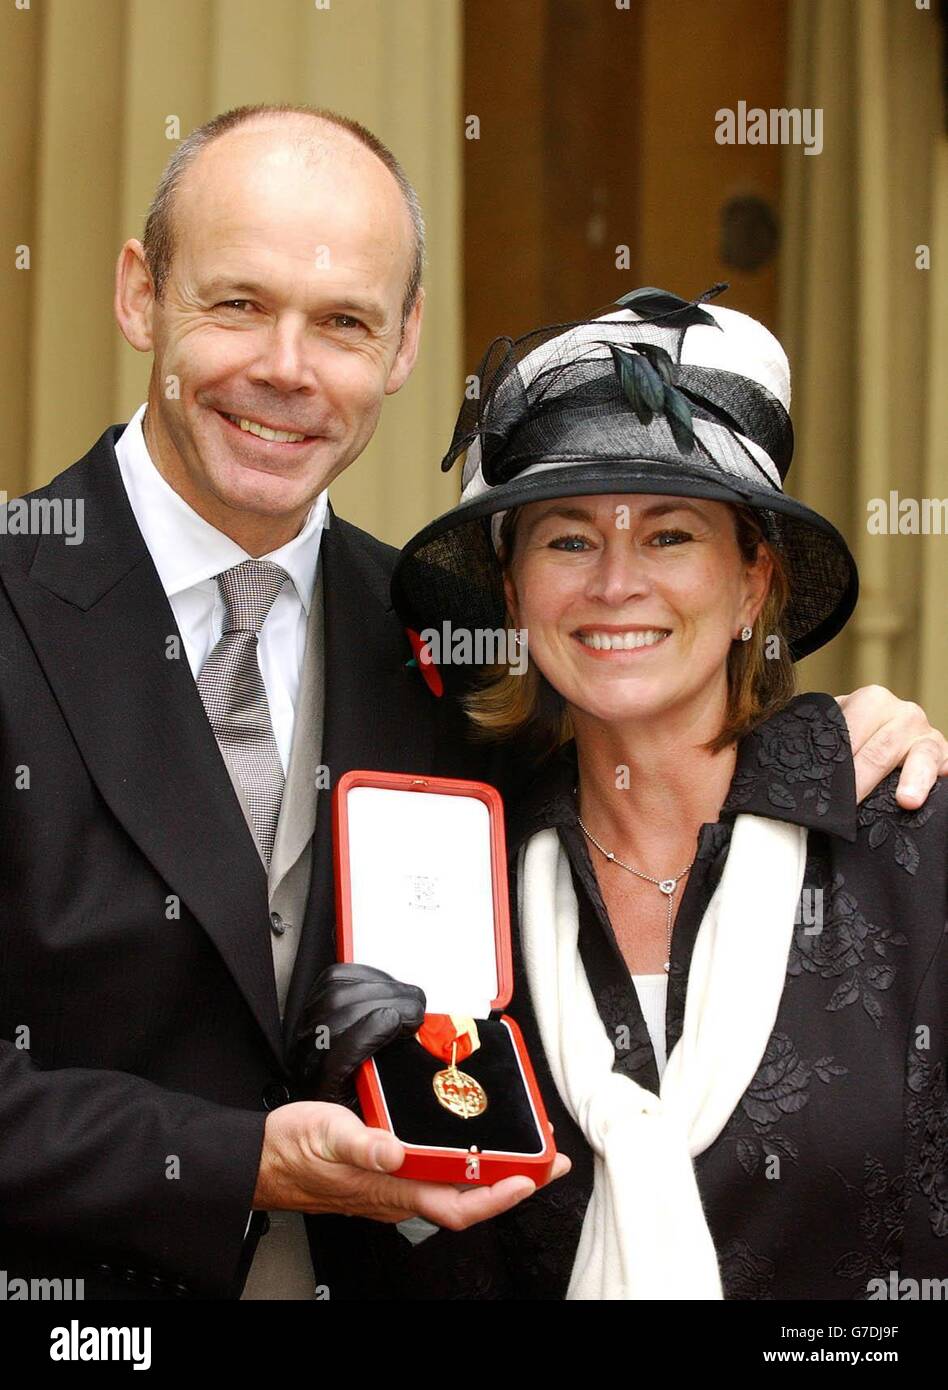 L'allenatore vincitore della Coppa del mondo d'Inghilterra Sir Clive Woodward con sua moglie Jayne dopo aver ricevuto la sua Knighthood dalla Regina Elisabetta II della Gran Bretagna a Buckingham Palace, nel centro di Londra. Foto Stock